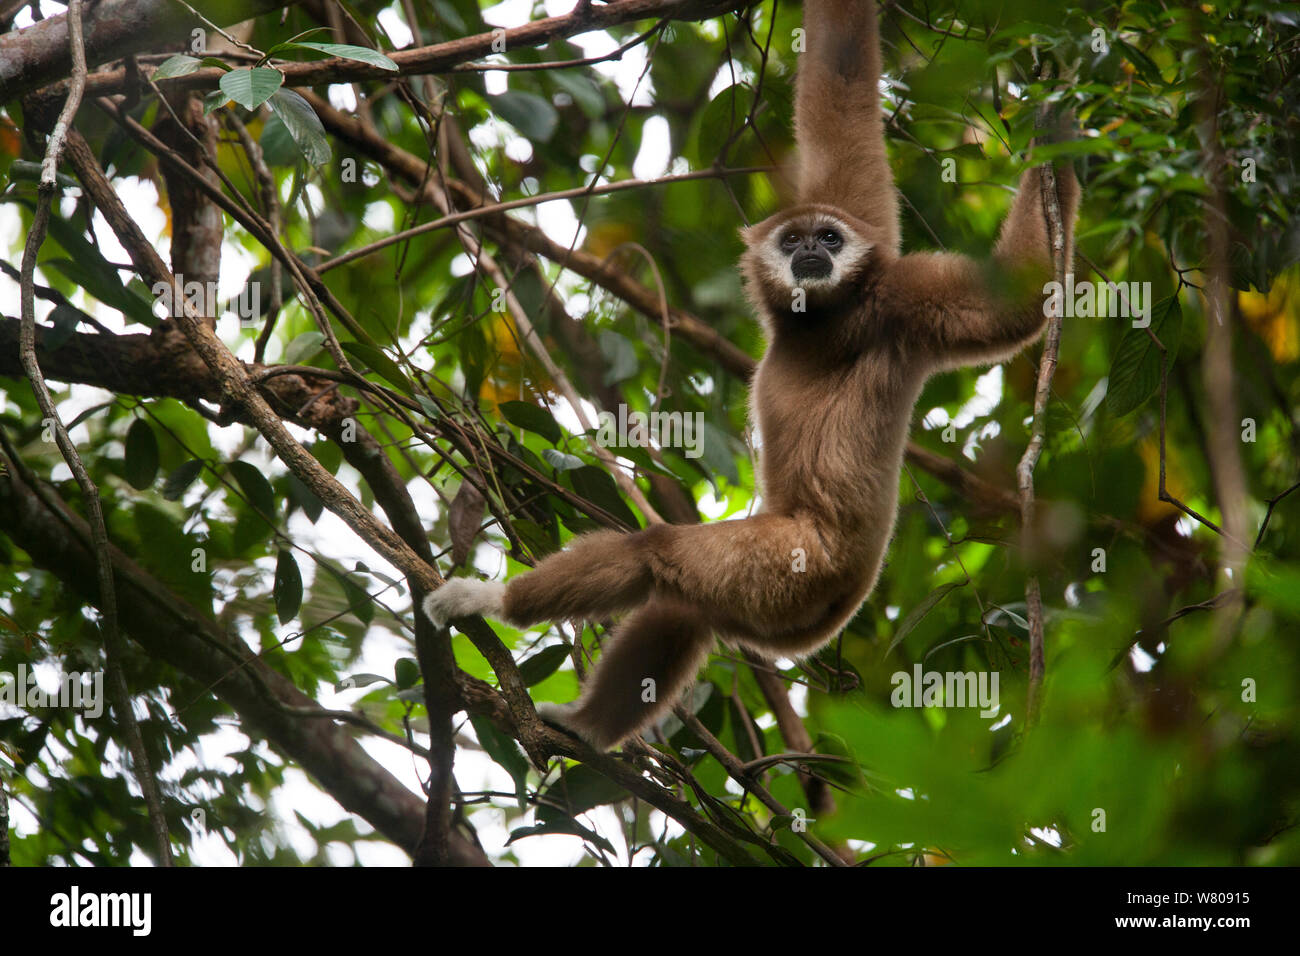 Lar Gibbon (Hylobates lar) den Einsatz von Waffen durch die Bäume schwingen, Gunung Leuser NP, Sumatra, Indonesien. Stockfoto